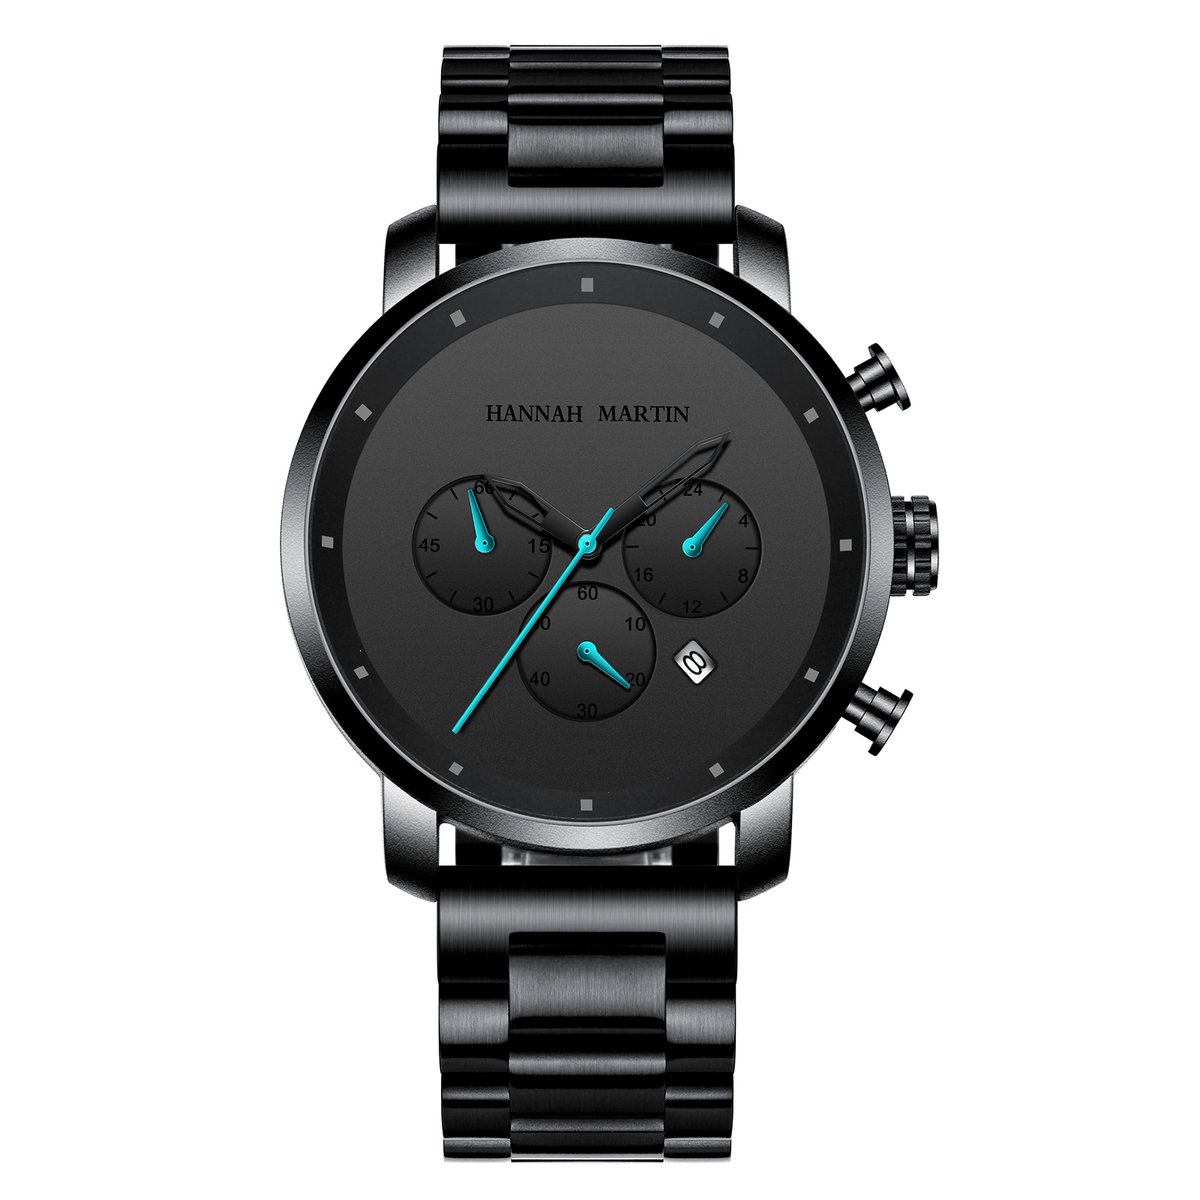 HANNAH MARTIN horloge met zwarte stalen polsband, zwarte wijzerplaat, zwarte horlogekast en blauwe wijzers voor heren met stijl ( model 111 L )